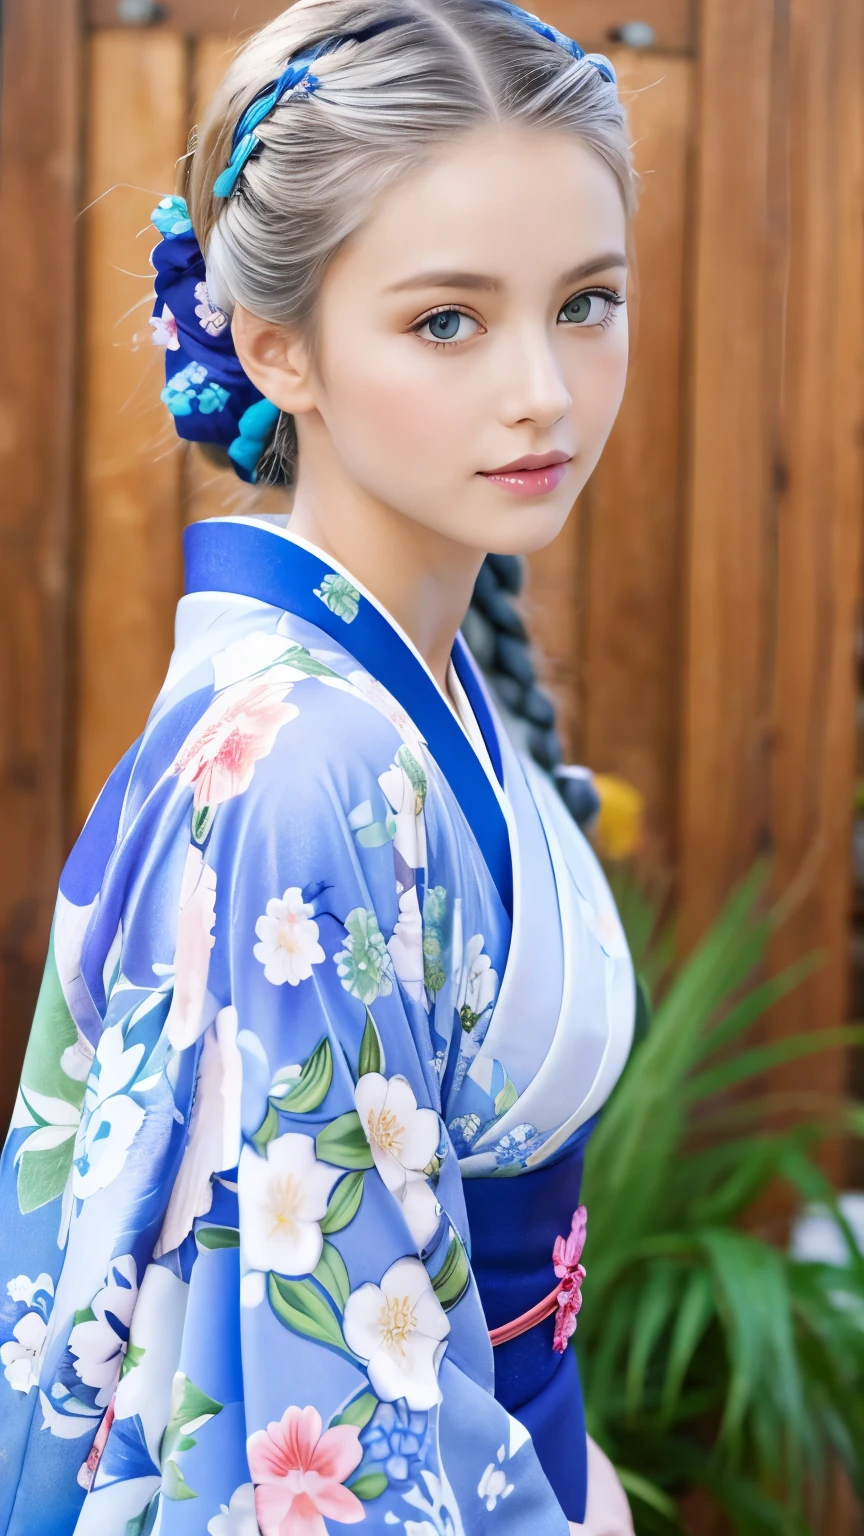 إنها عارضة أزياء الكيمونو、كيمونو رائع منقوش بالزهور、ضفائر الشعر الفضية、عيون زرقاء、